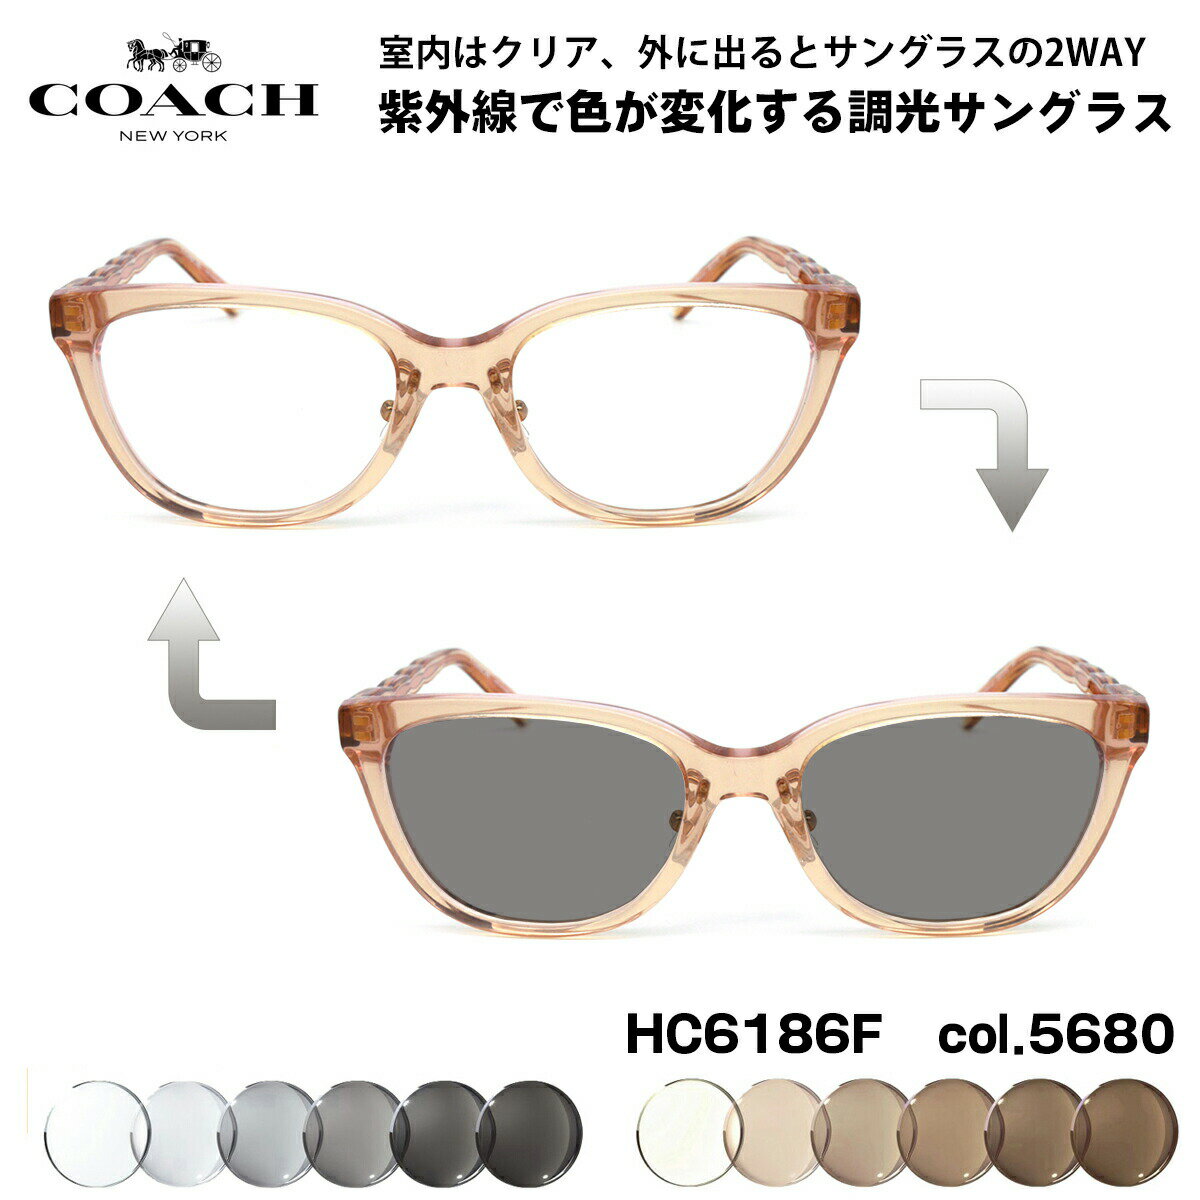 COACH 調光 サングラス HC6186F 5680 53mm アジアンフィット コーチ 国内正規品